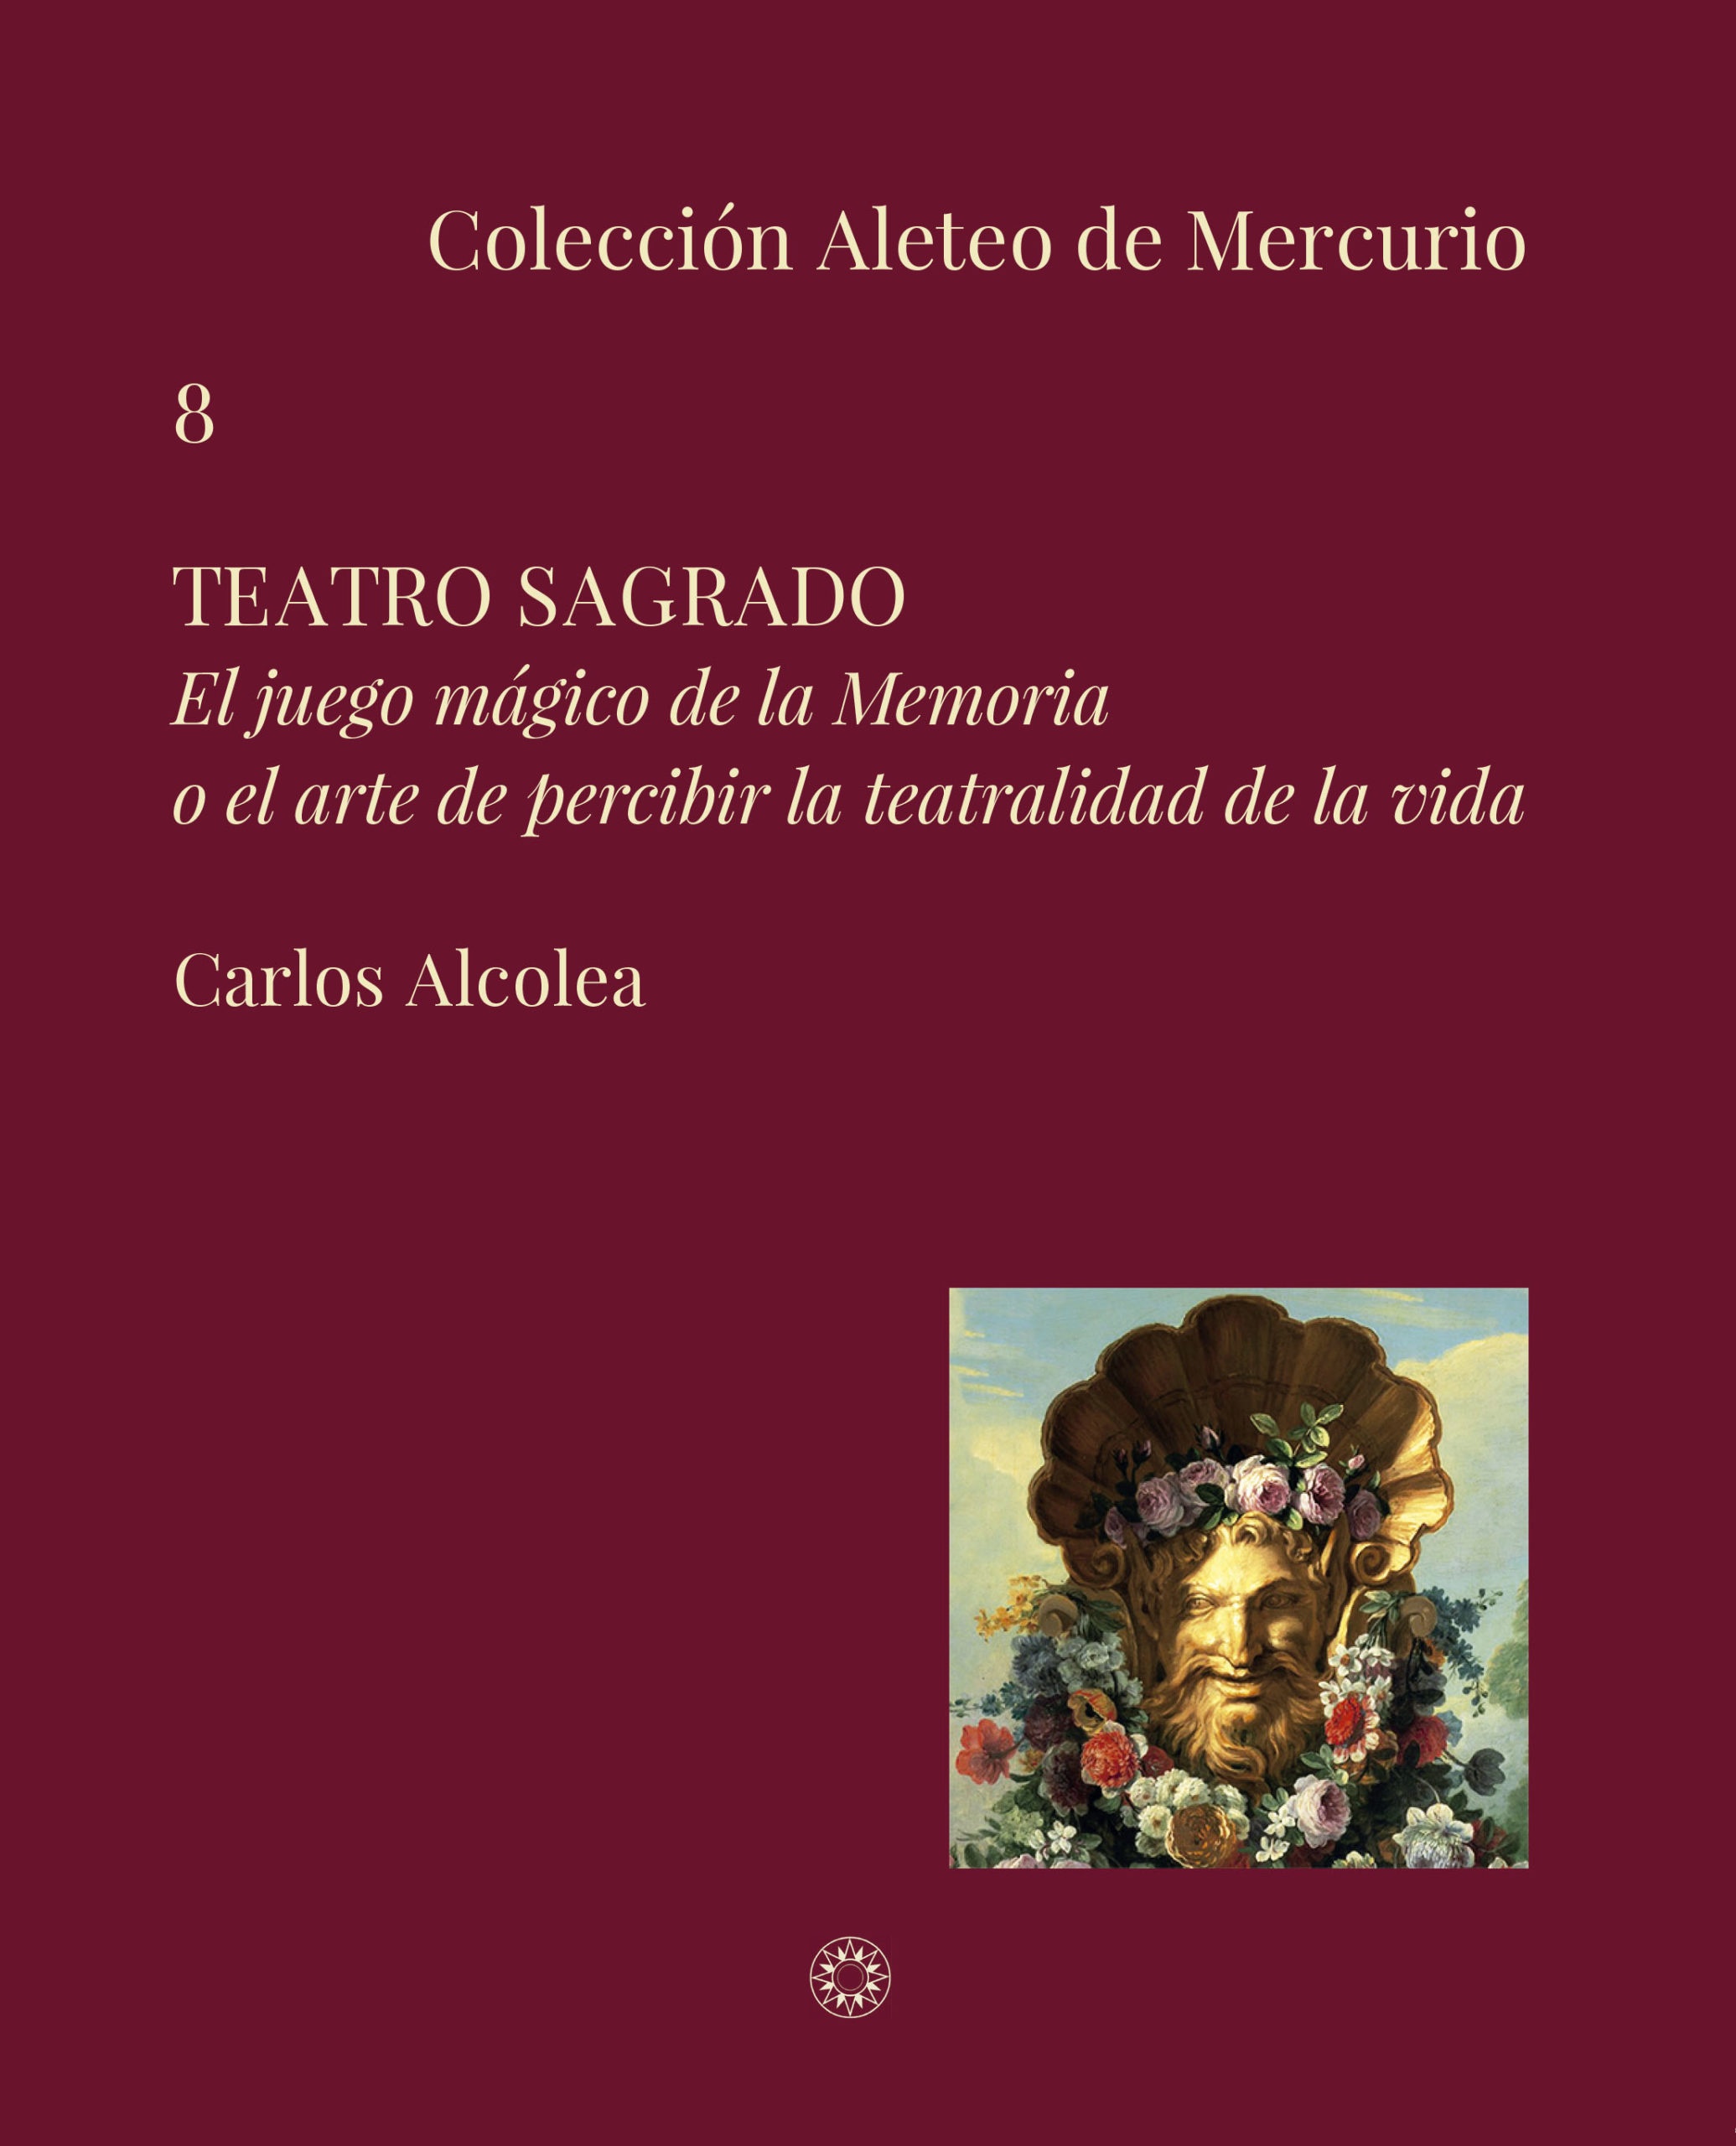 Audiovisual basado en los textos de Teatro Sagrado, de Carlos Alcolea